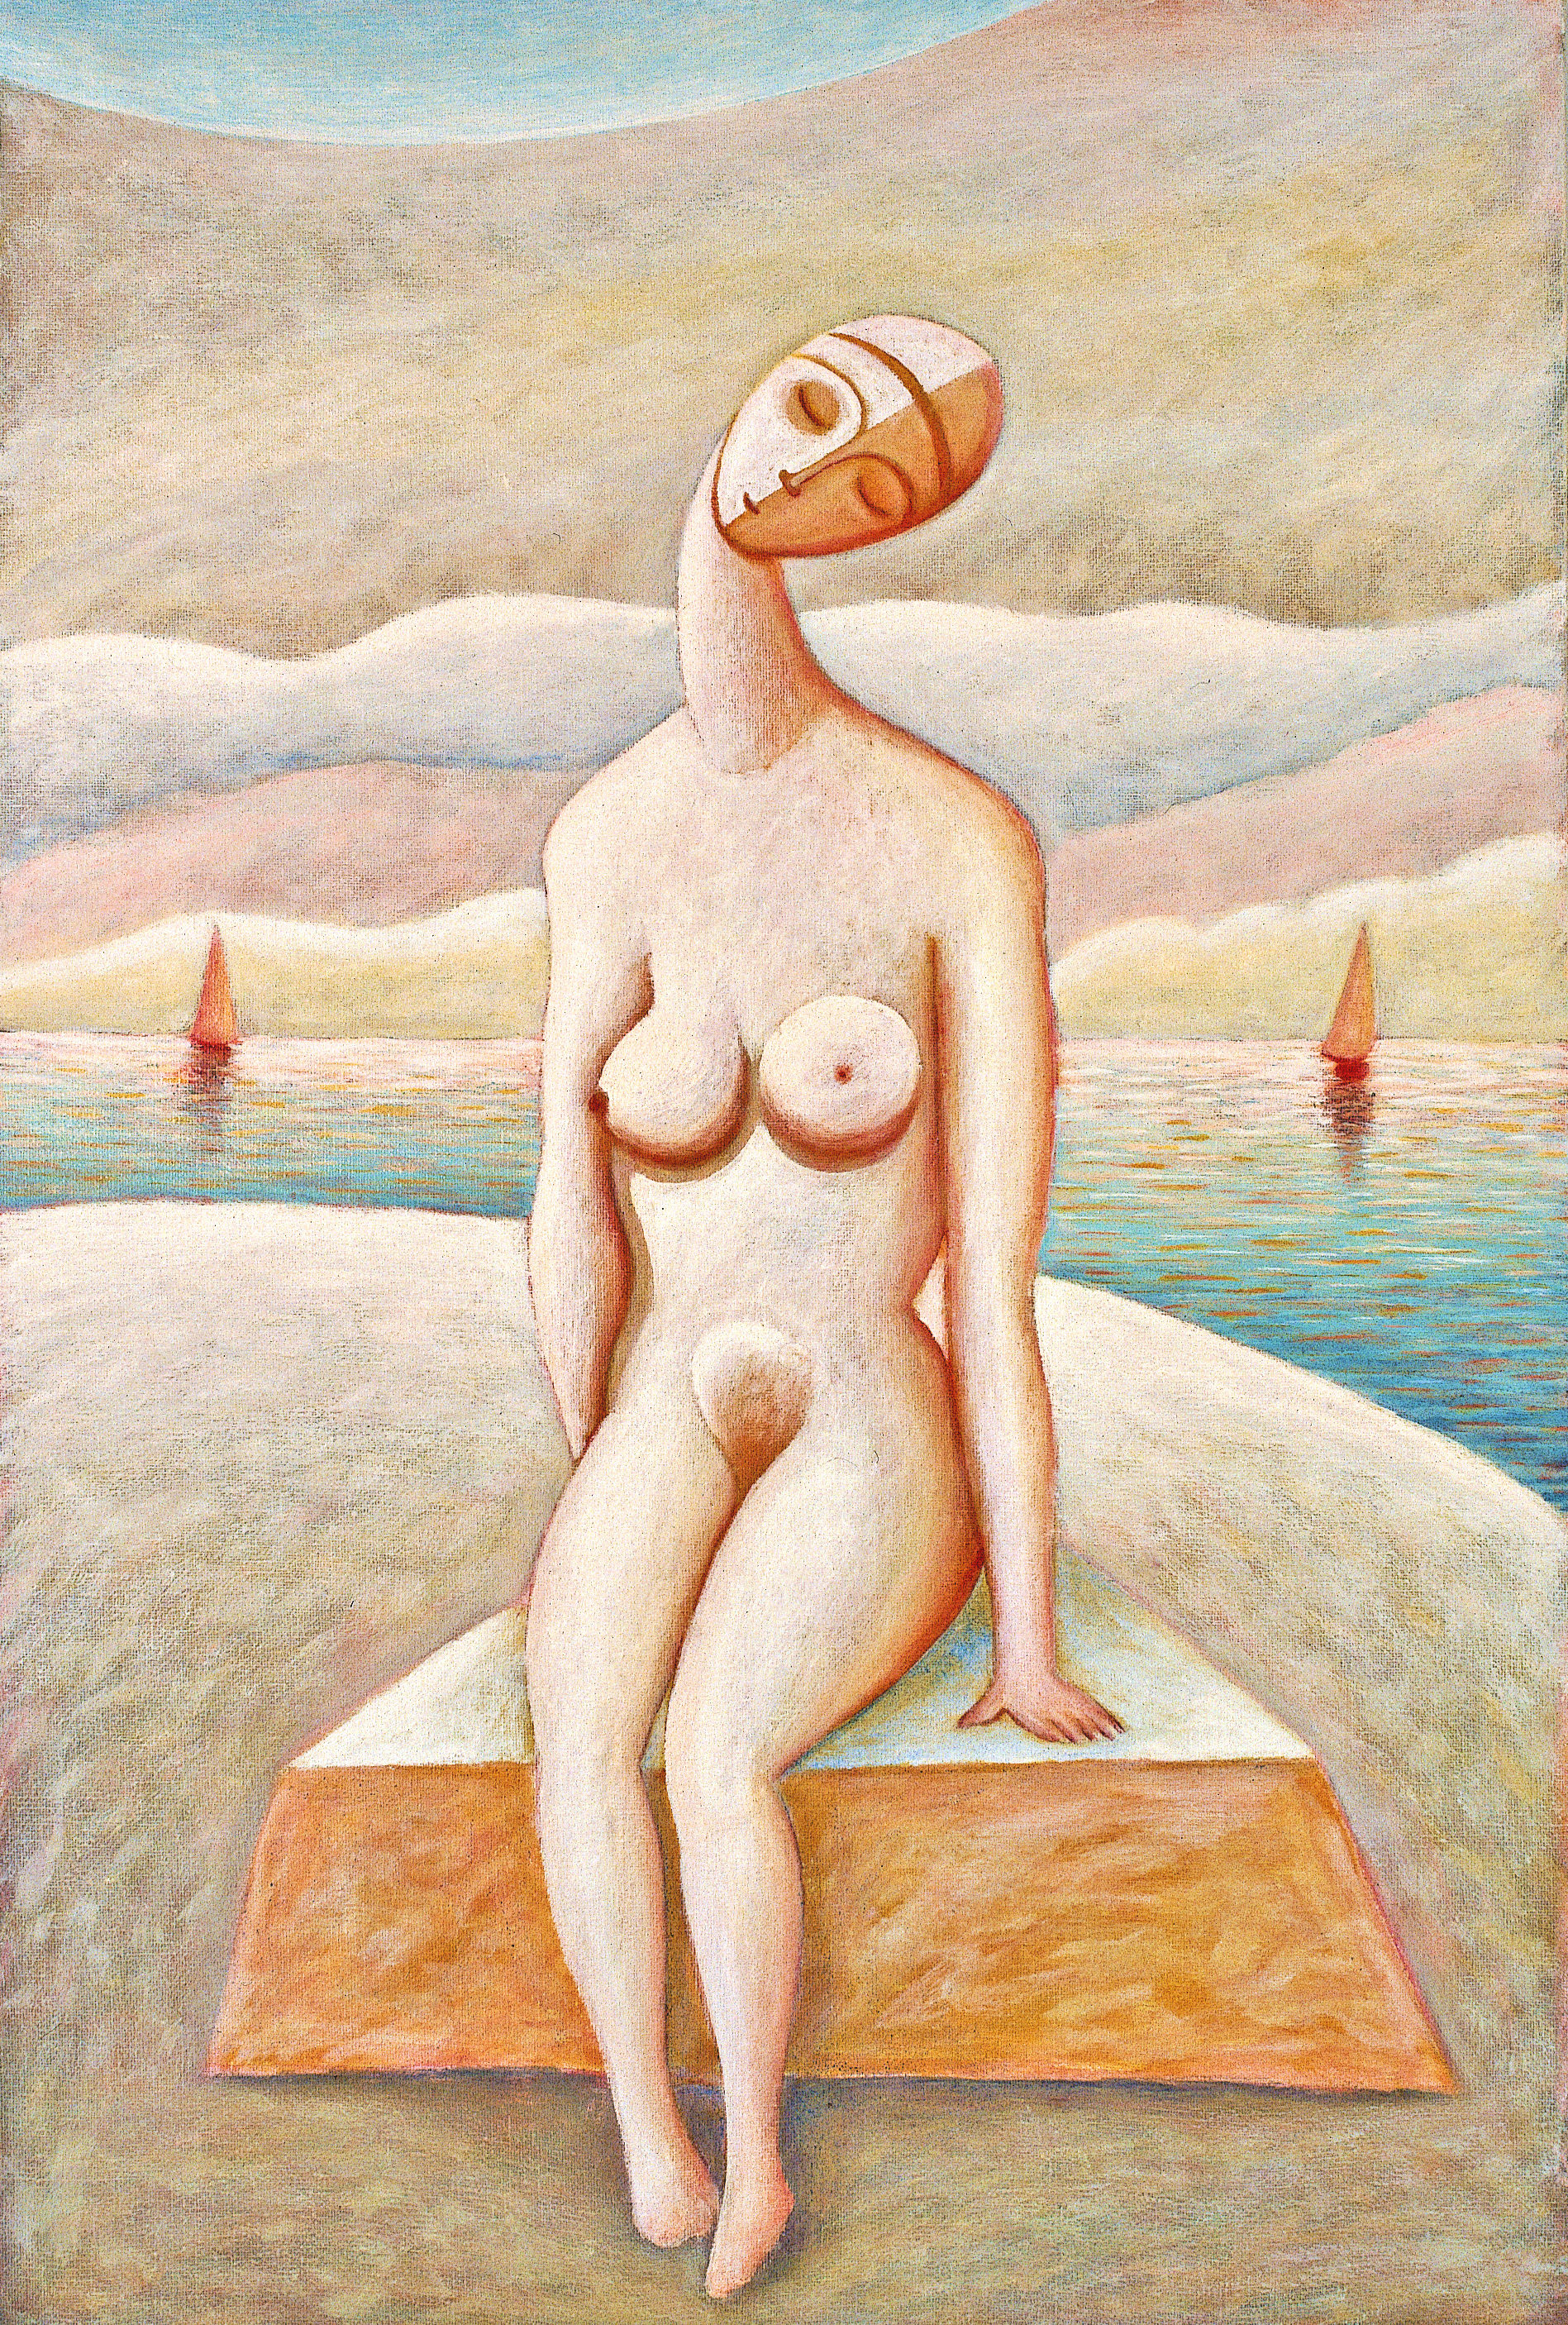 Nudo sulla spiaggia, 1983
Olio su tela
60 x 40 cm